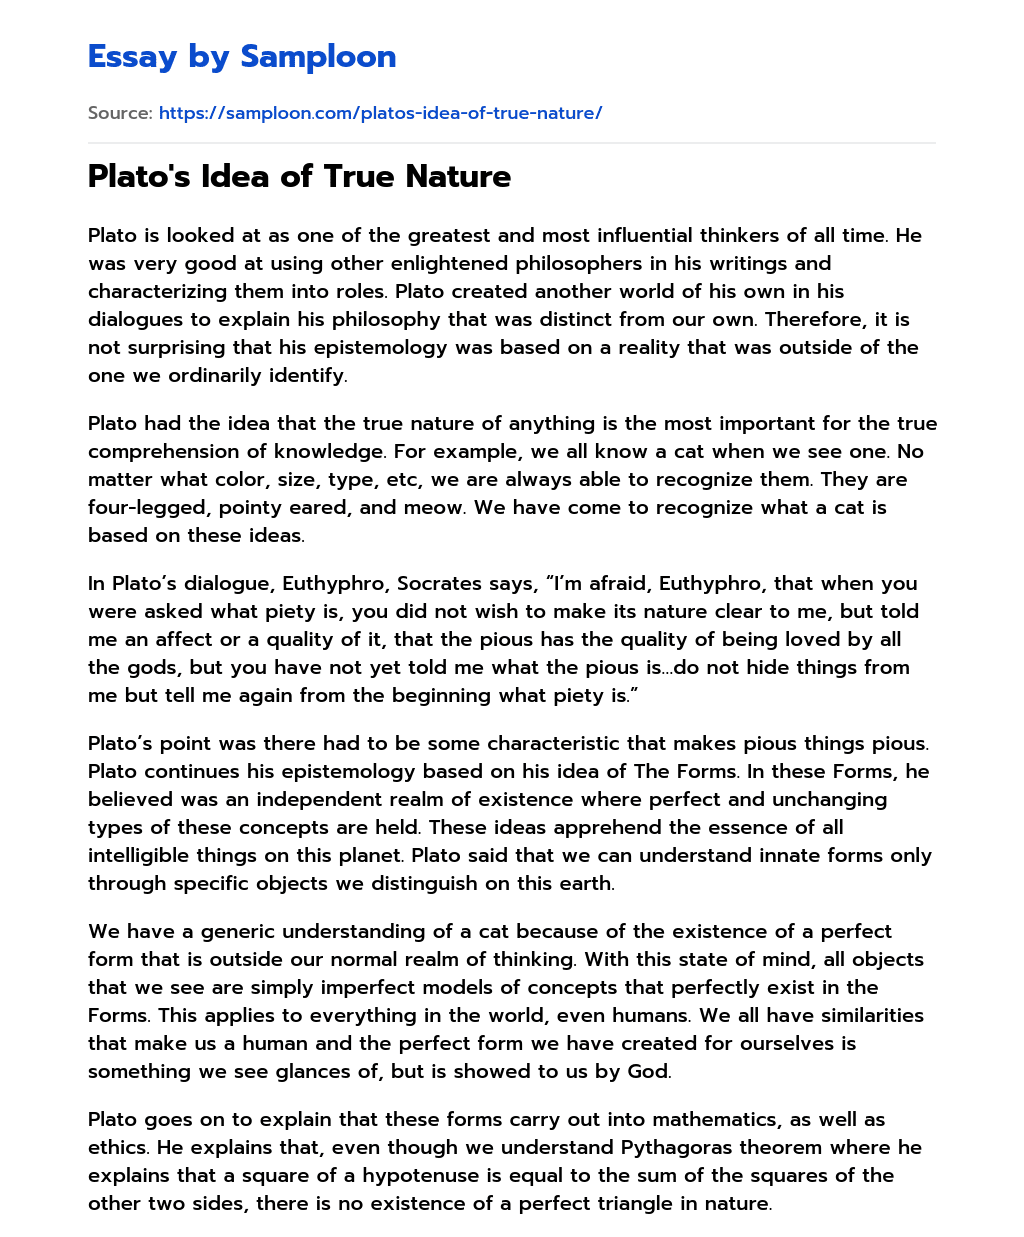 Plato’s Idea of True Nature essay